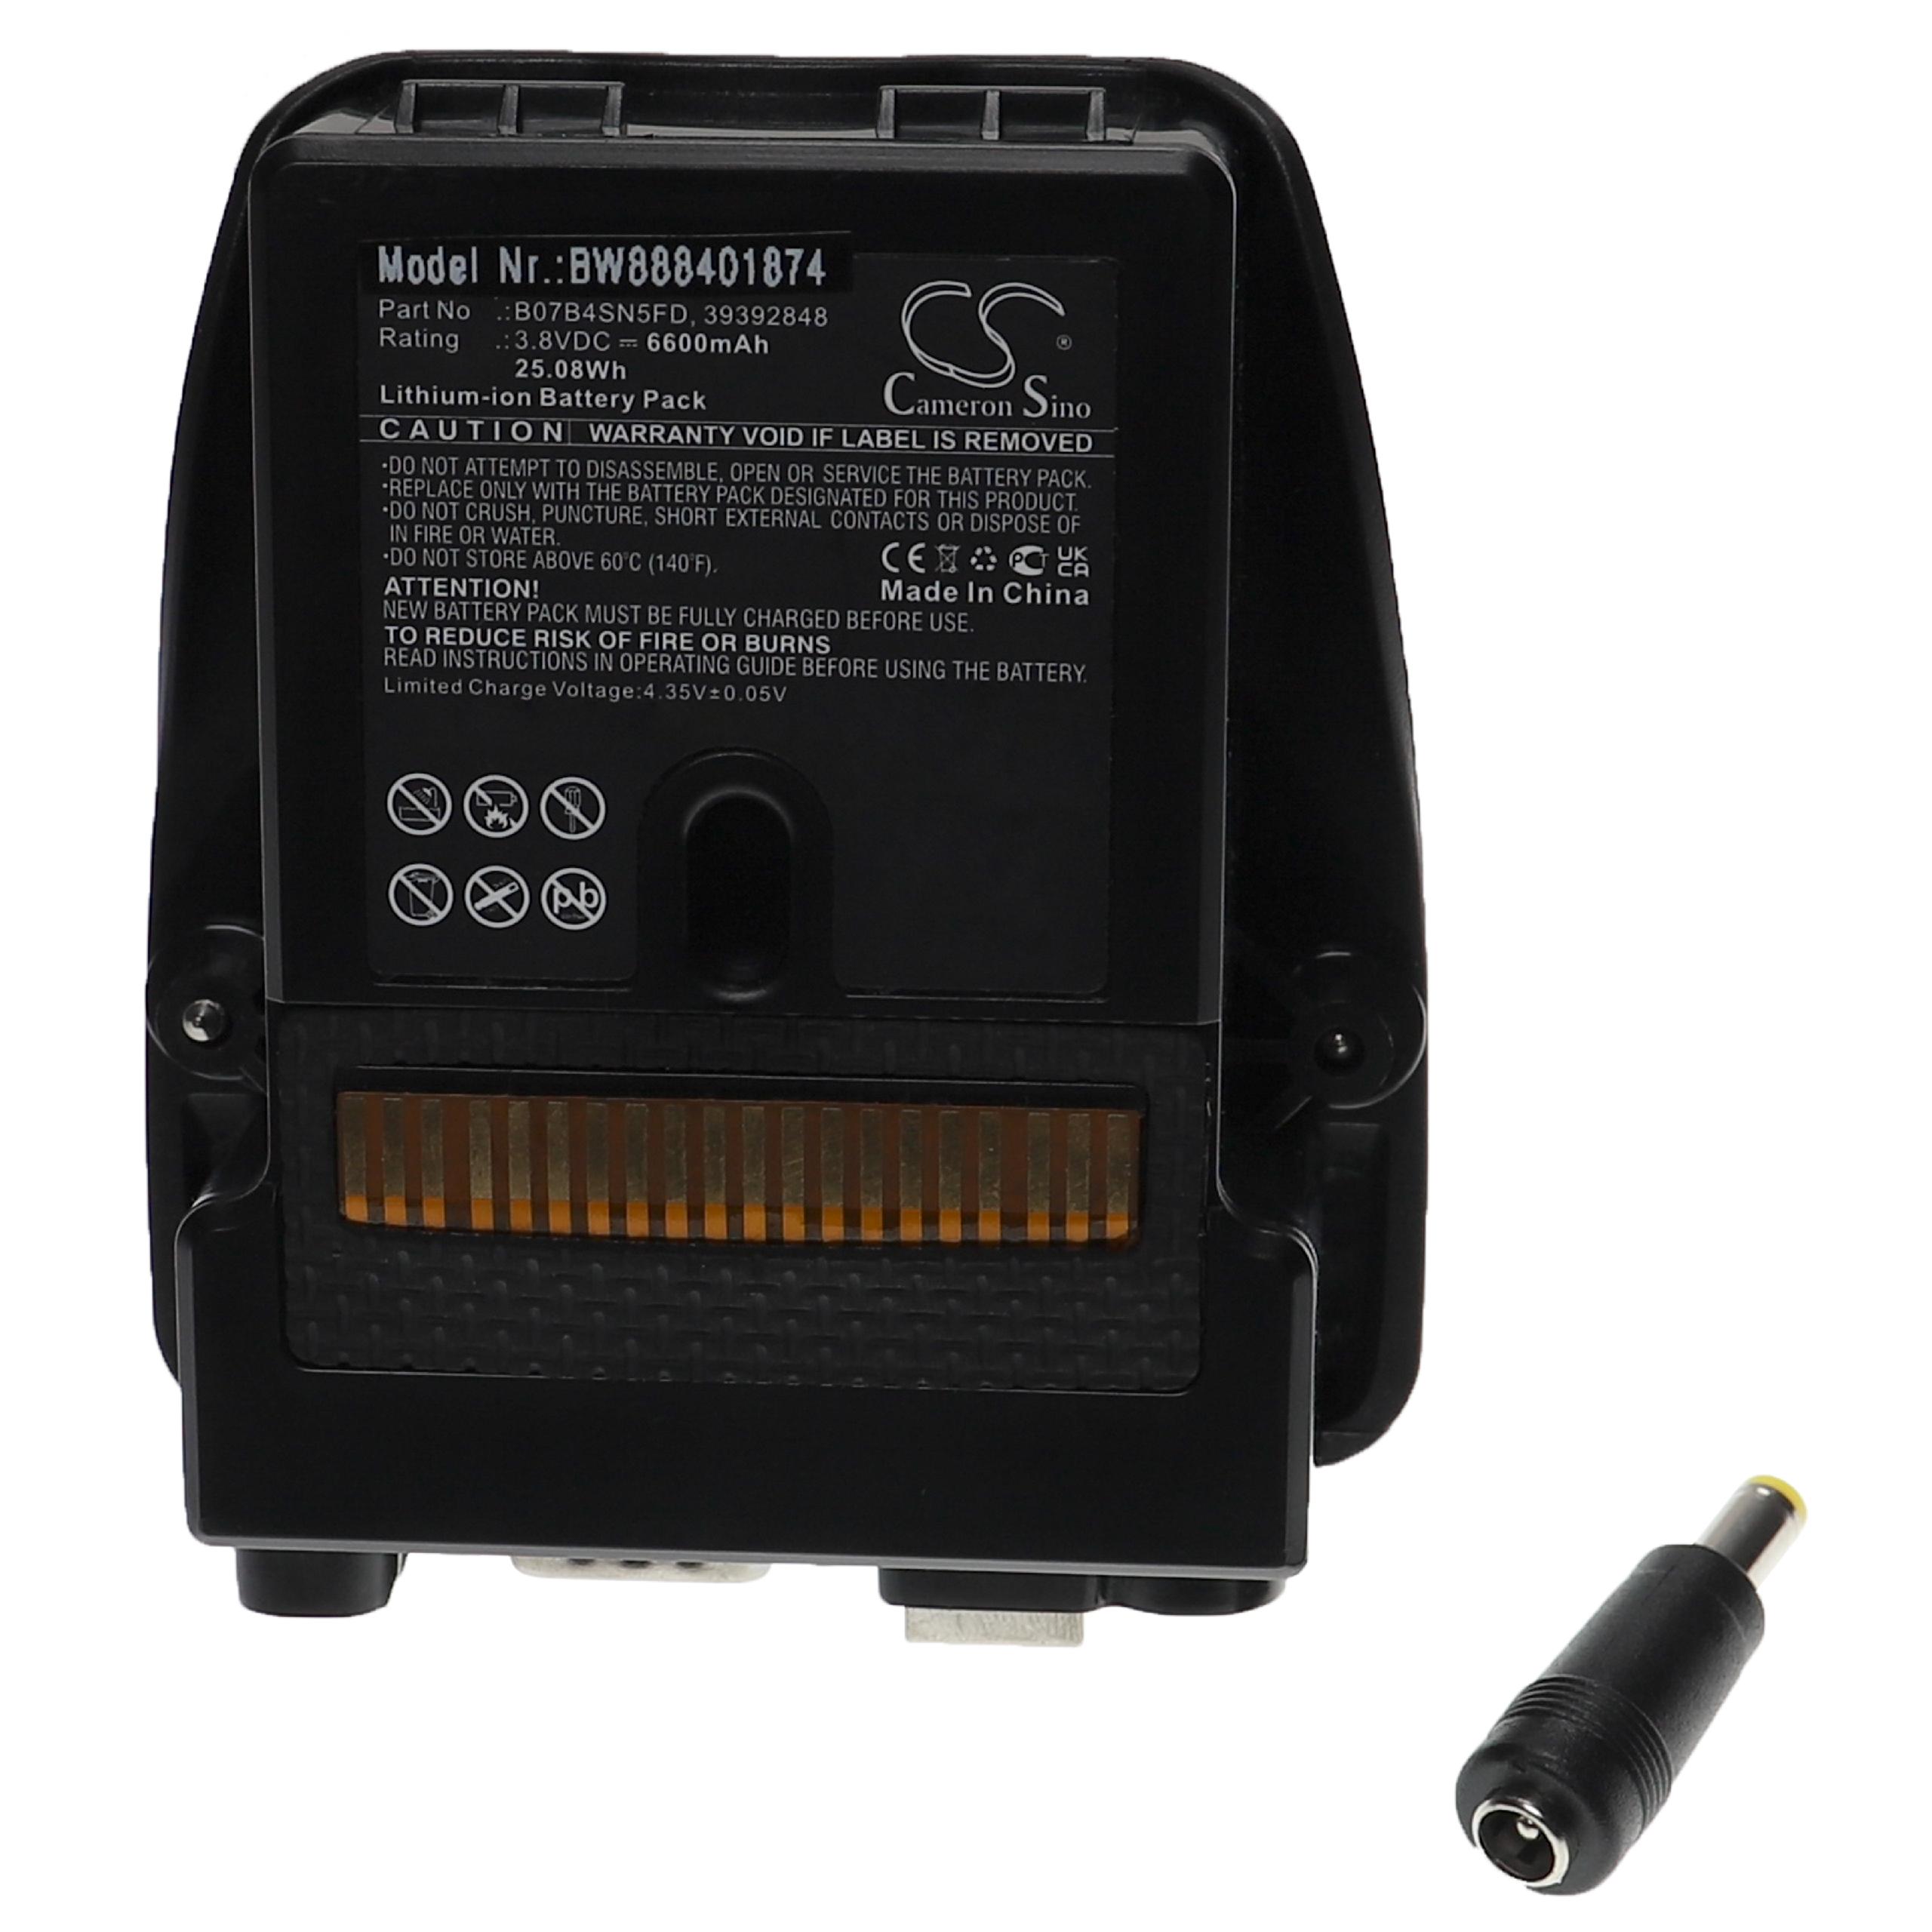 Batería reemplaza Trimble B07B4SN5FD, 39392848 para dispositivo medición Trimble - 6600 mAh 3,8 V Li-Ion